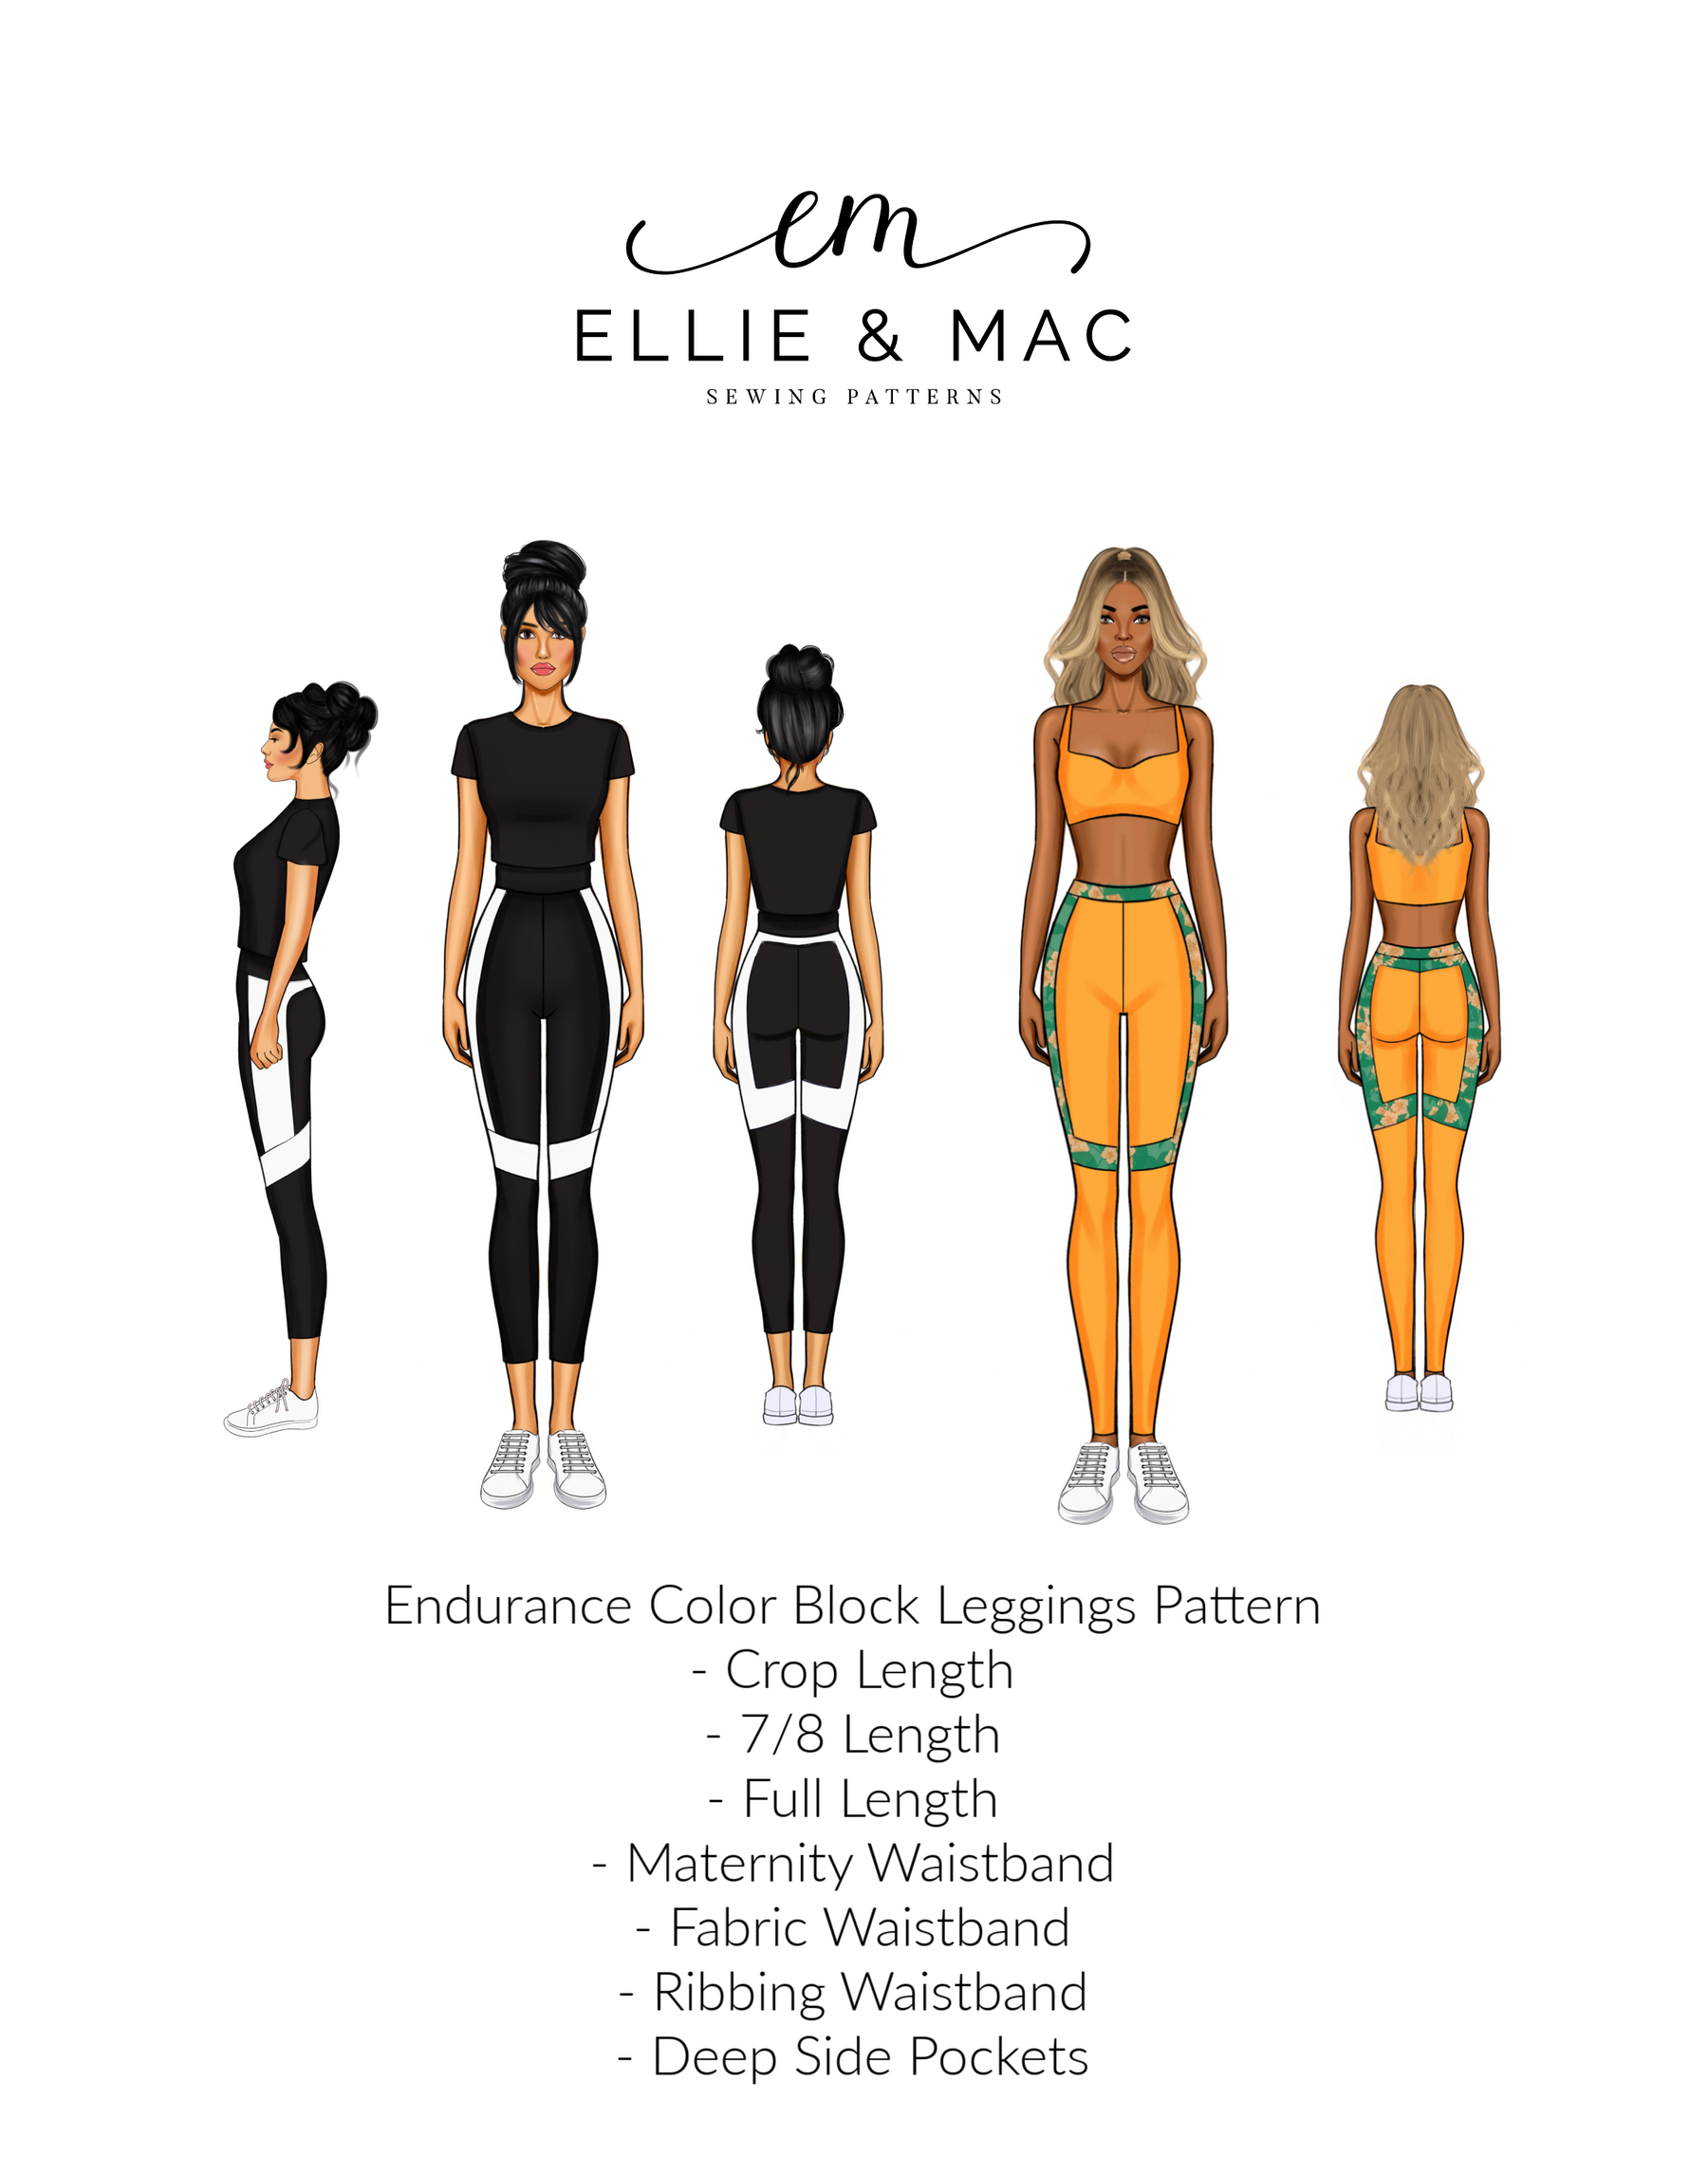 Endurance Color Block Leggings Pattern